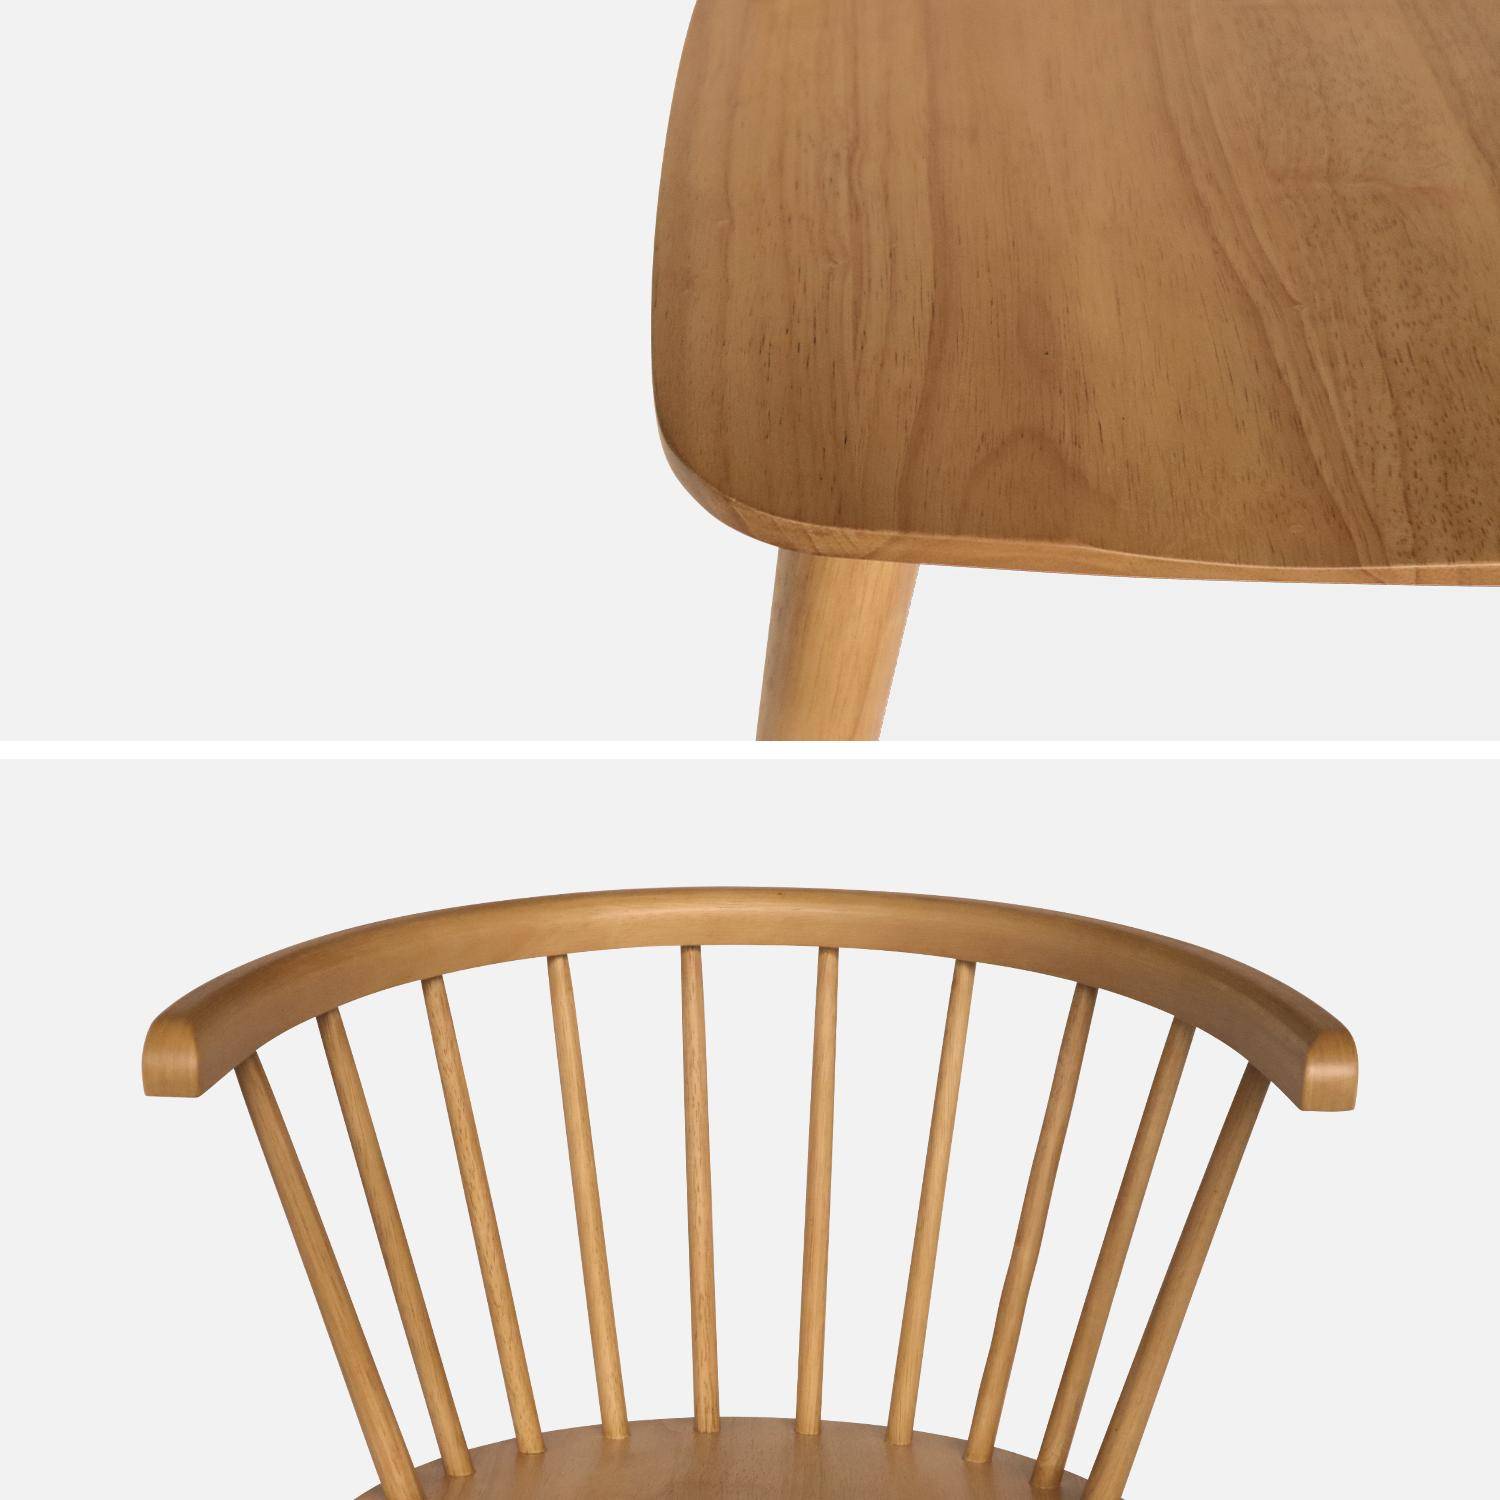 Lote de 2 sillas de bar de madera natural y contrachapada, Paula, An 51 x Pr 53 x Al 75cm Photo5